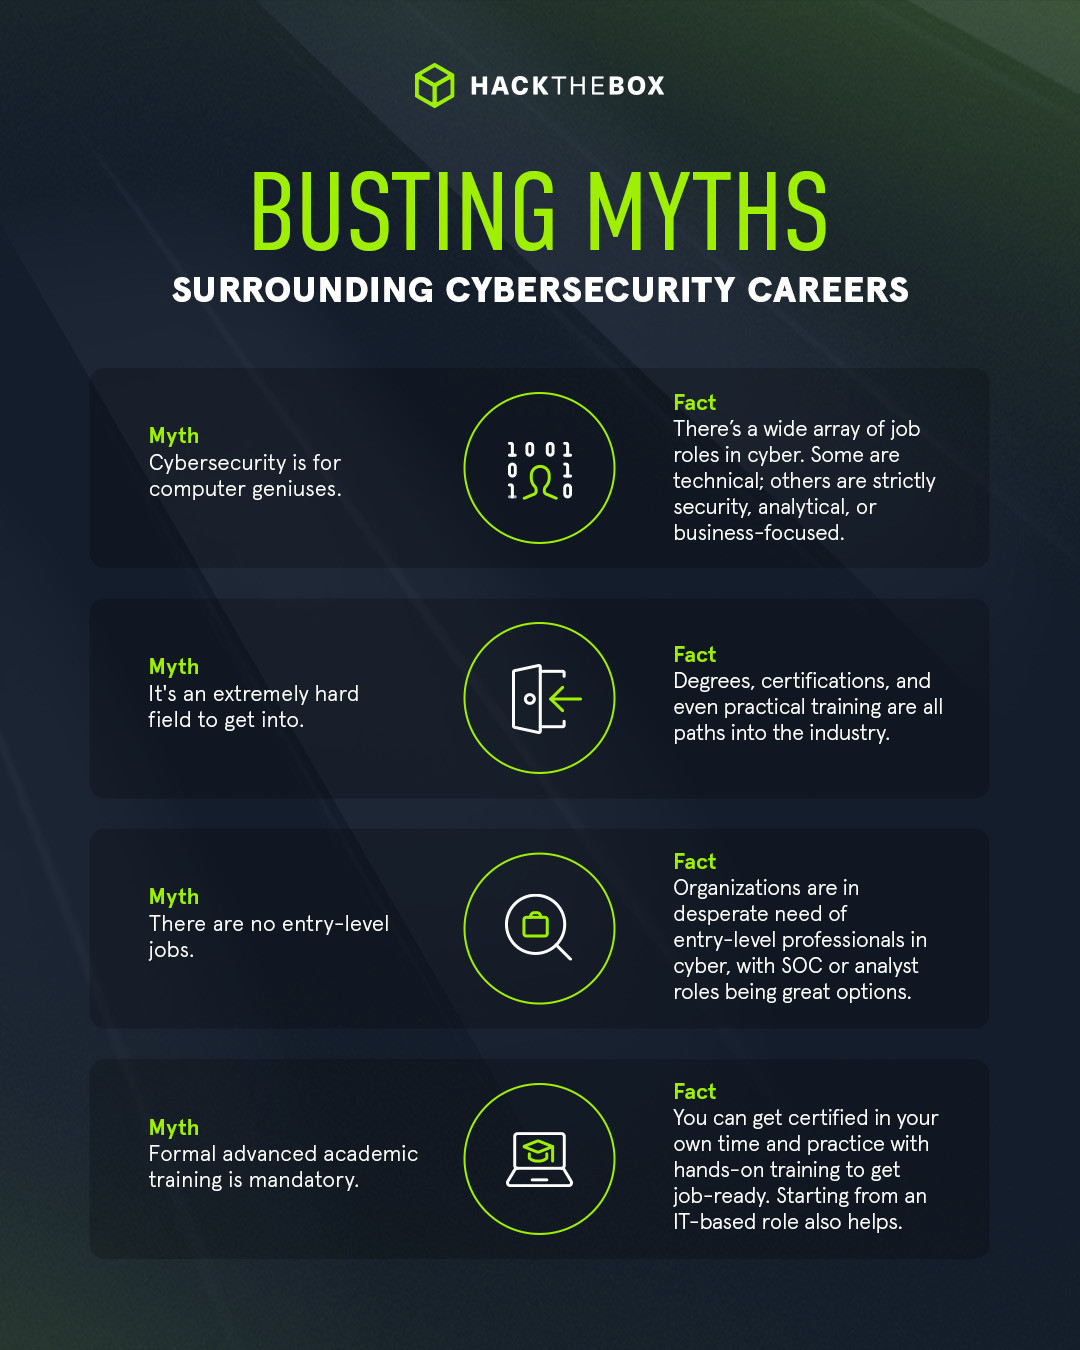 Cybersecurity career myths